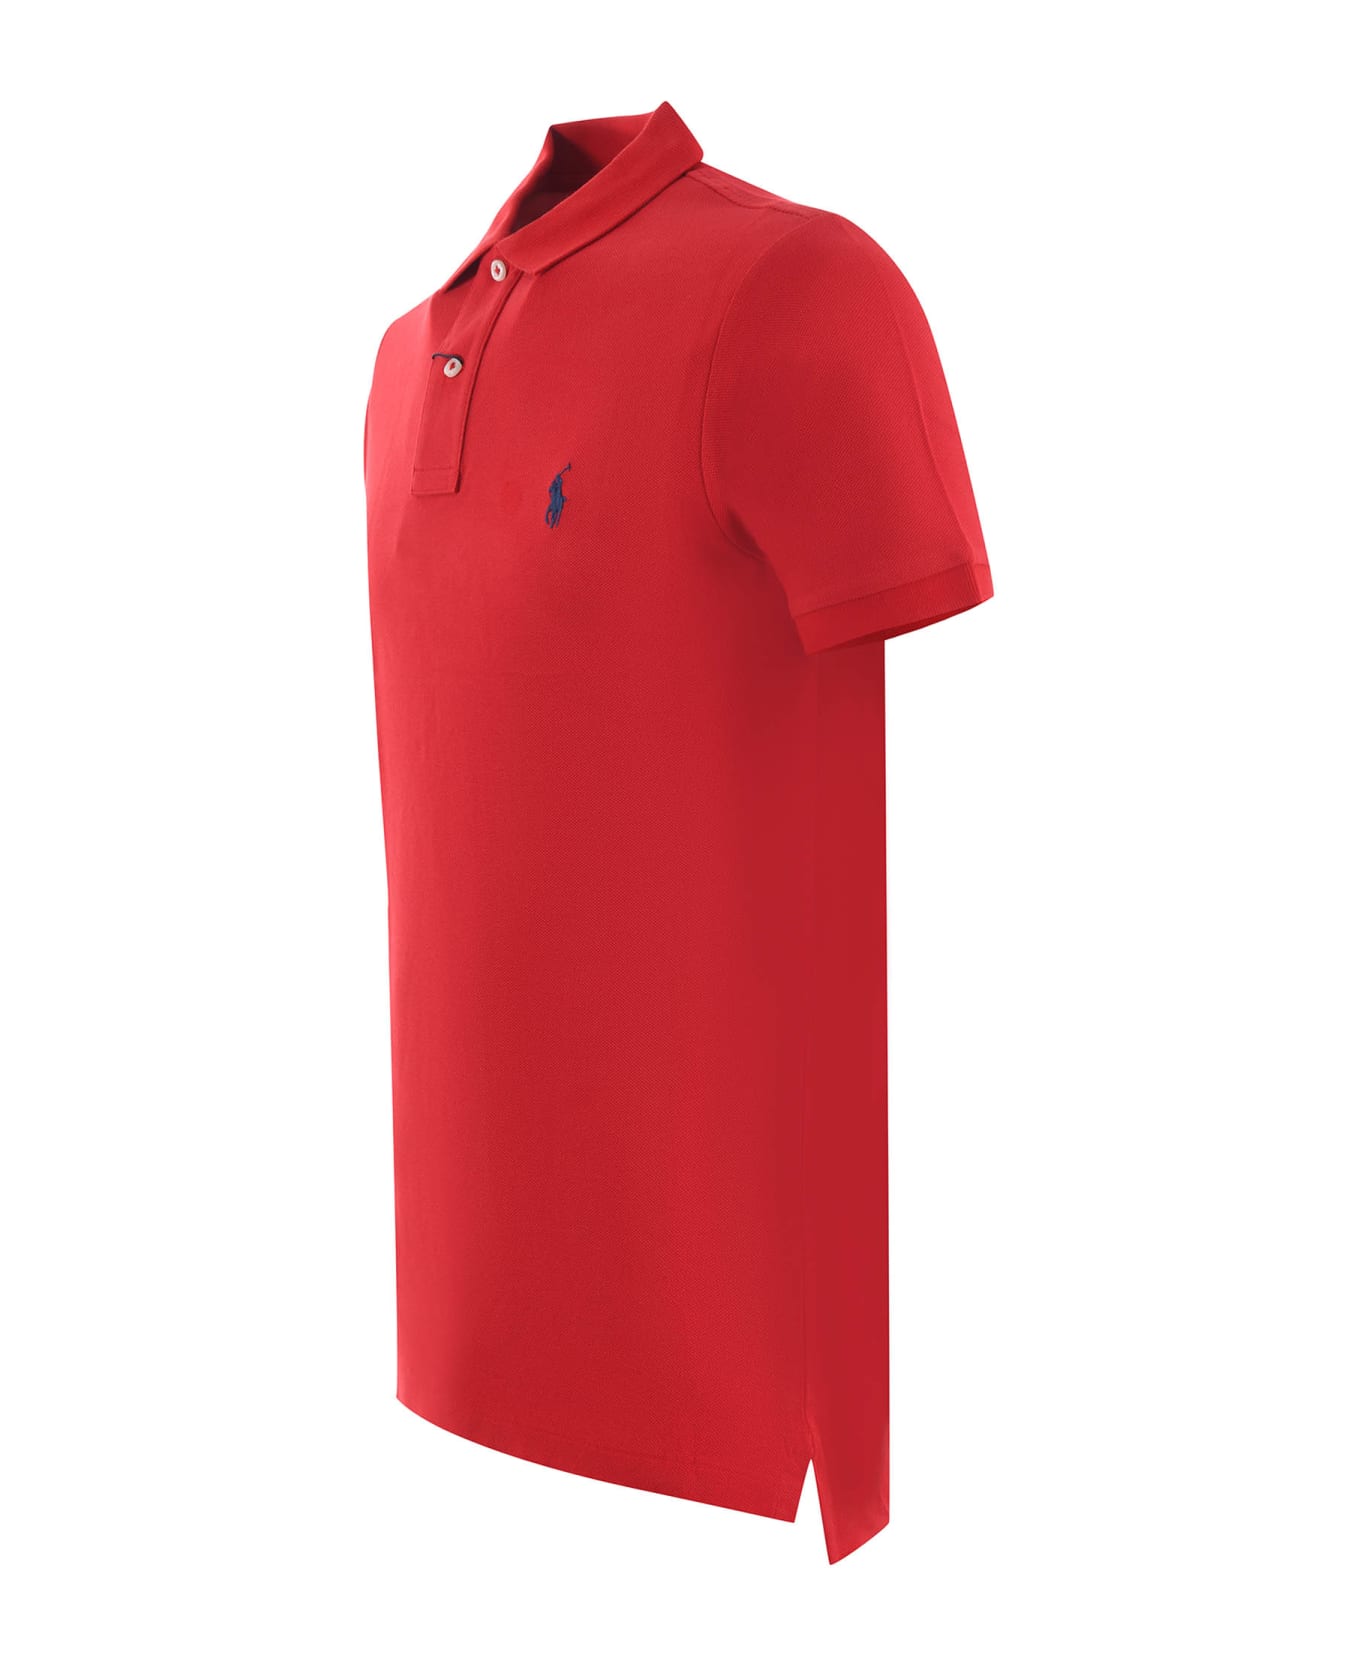 Polo Ralph Lauren "polo Ralph Lauren" Polo Shirt - Rosso ポロシャツ